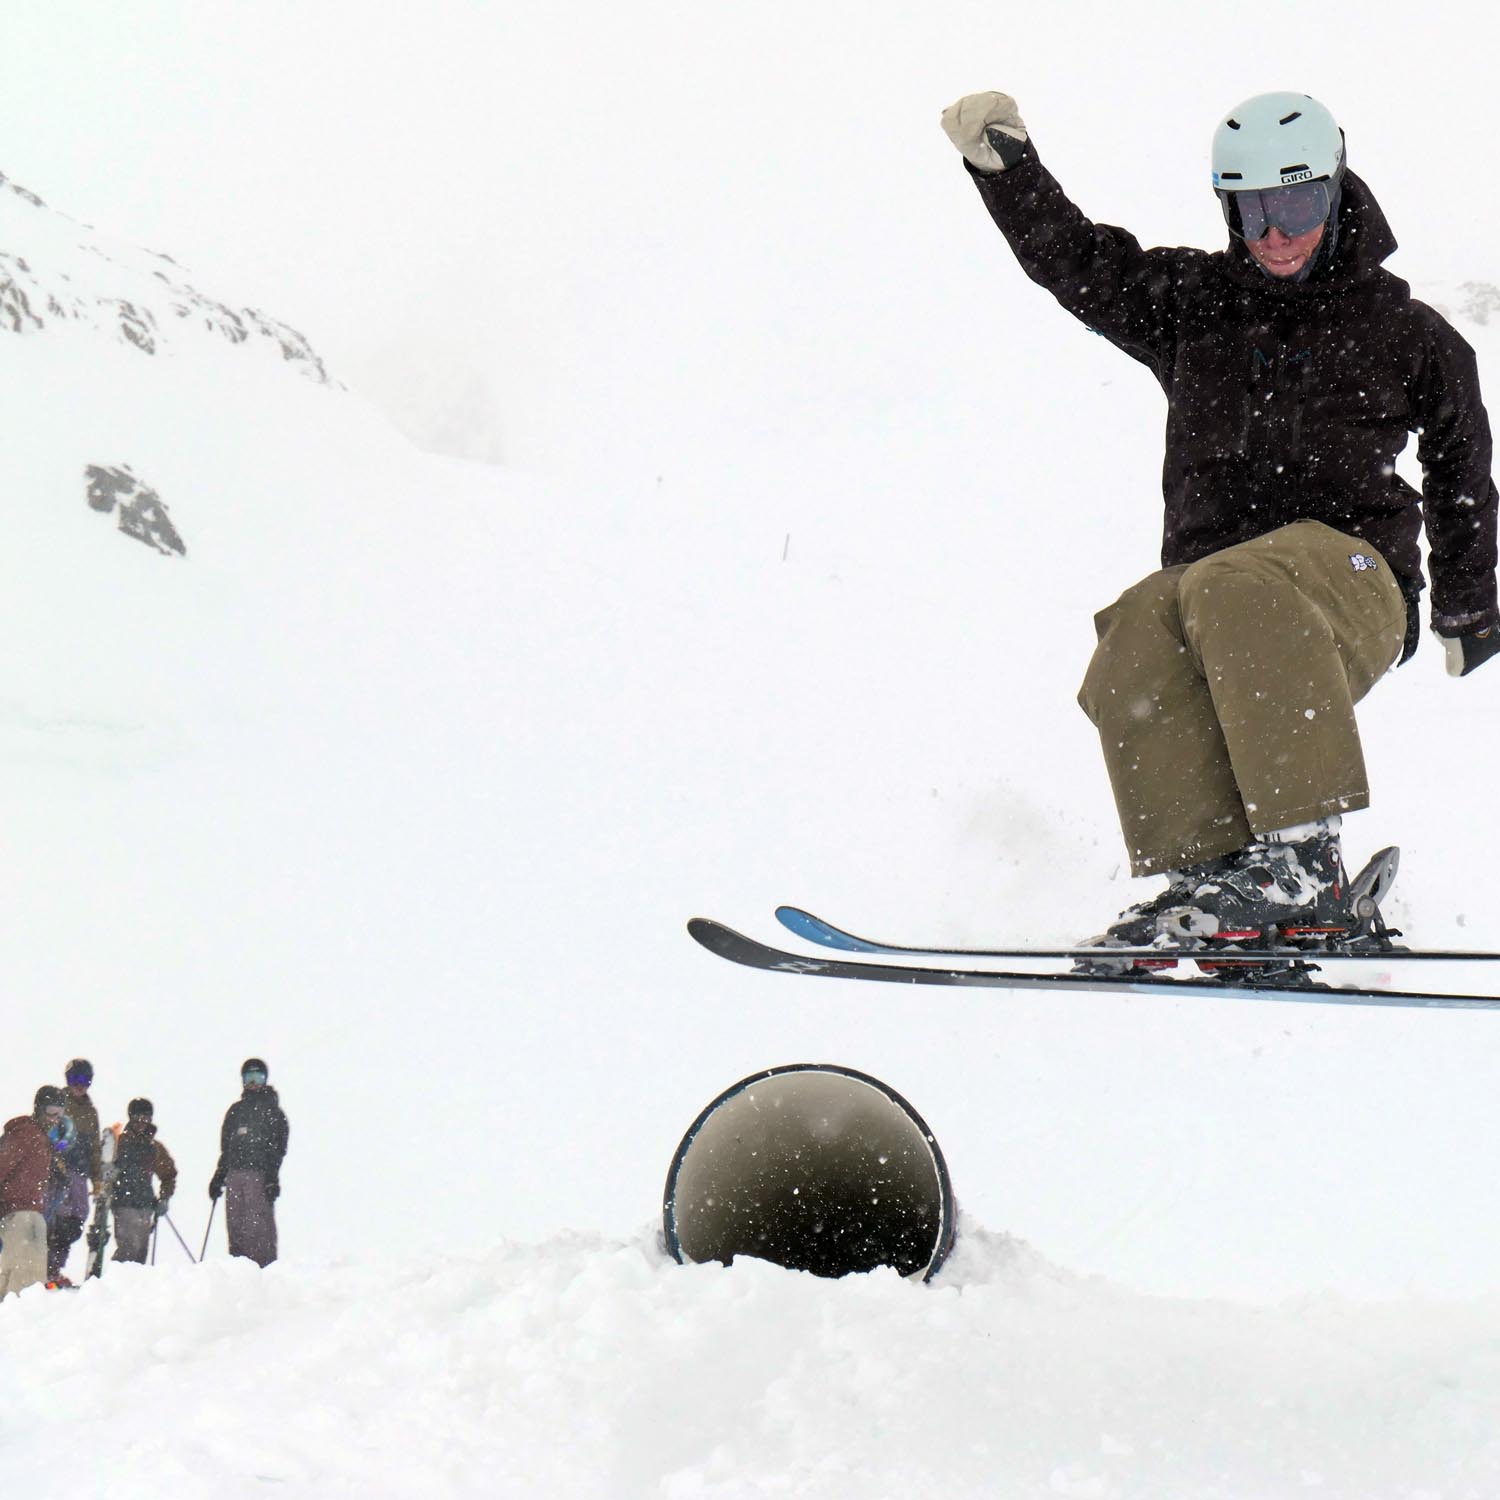 Trainingskurse für Ski und Snowboarder beim back on snow camp auf dem Hintertuxer Gletscher